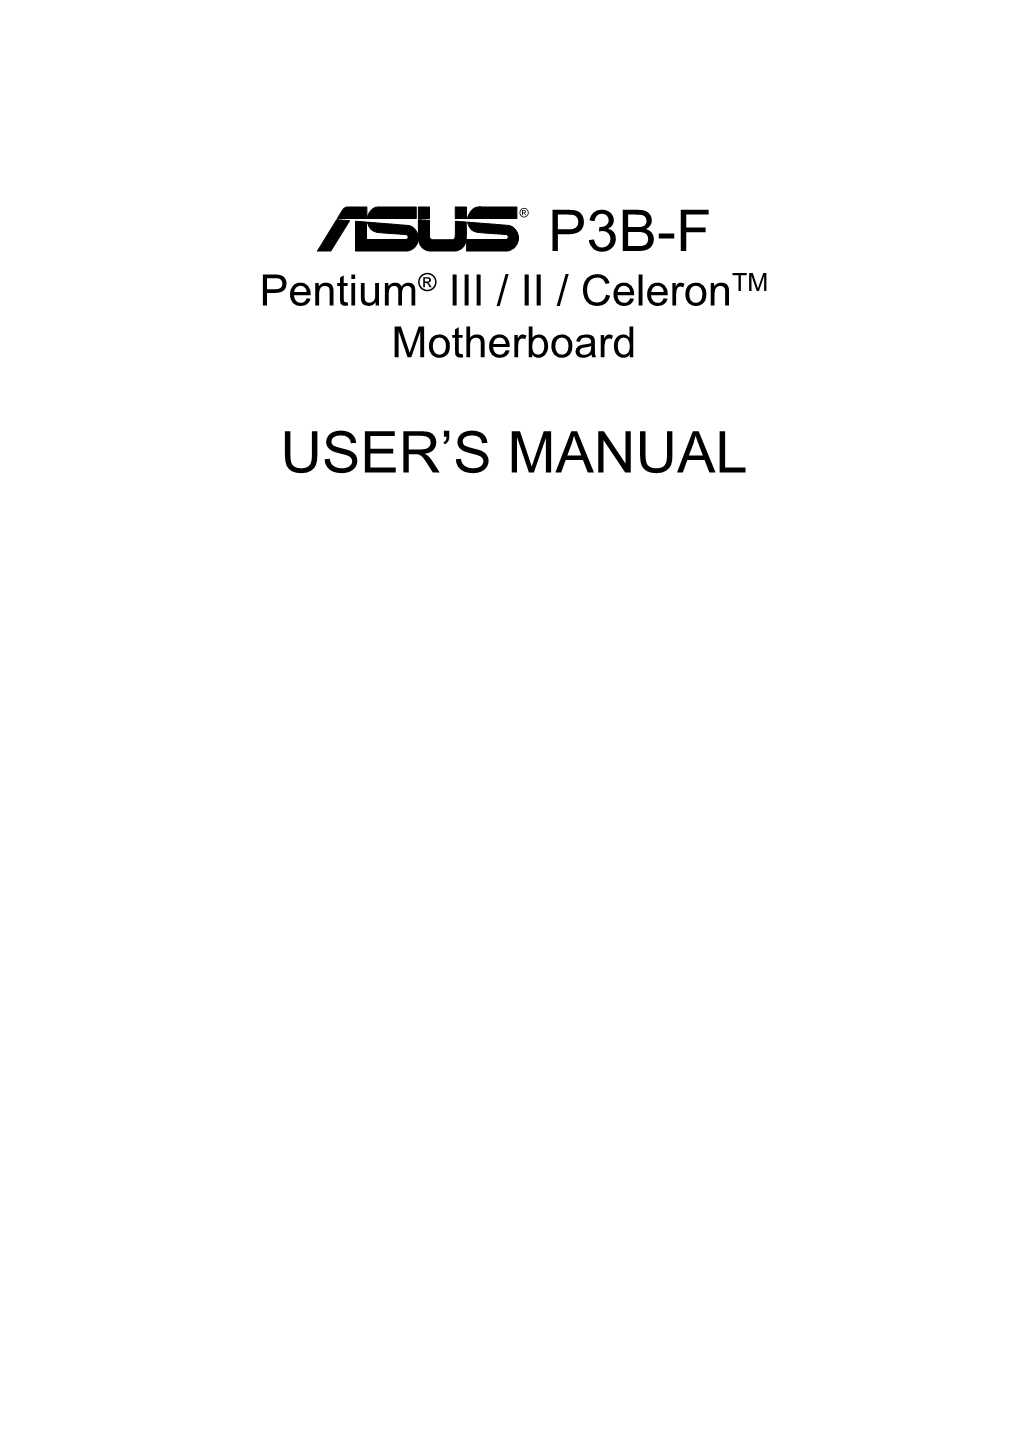 P3b-F User's Manual